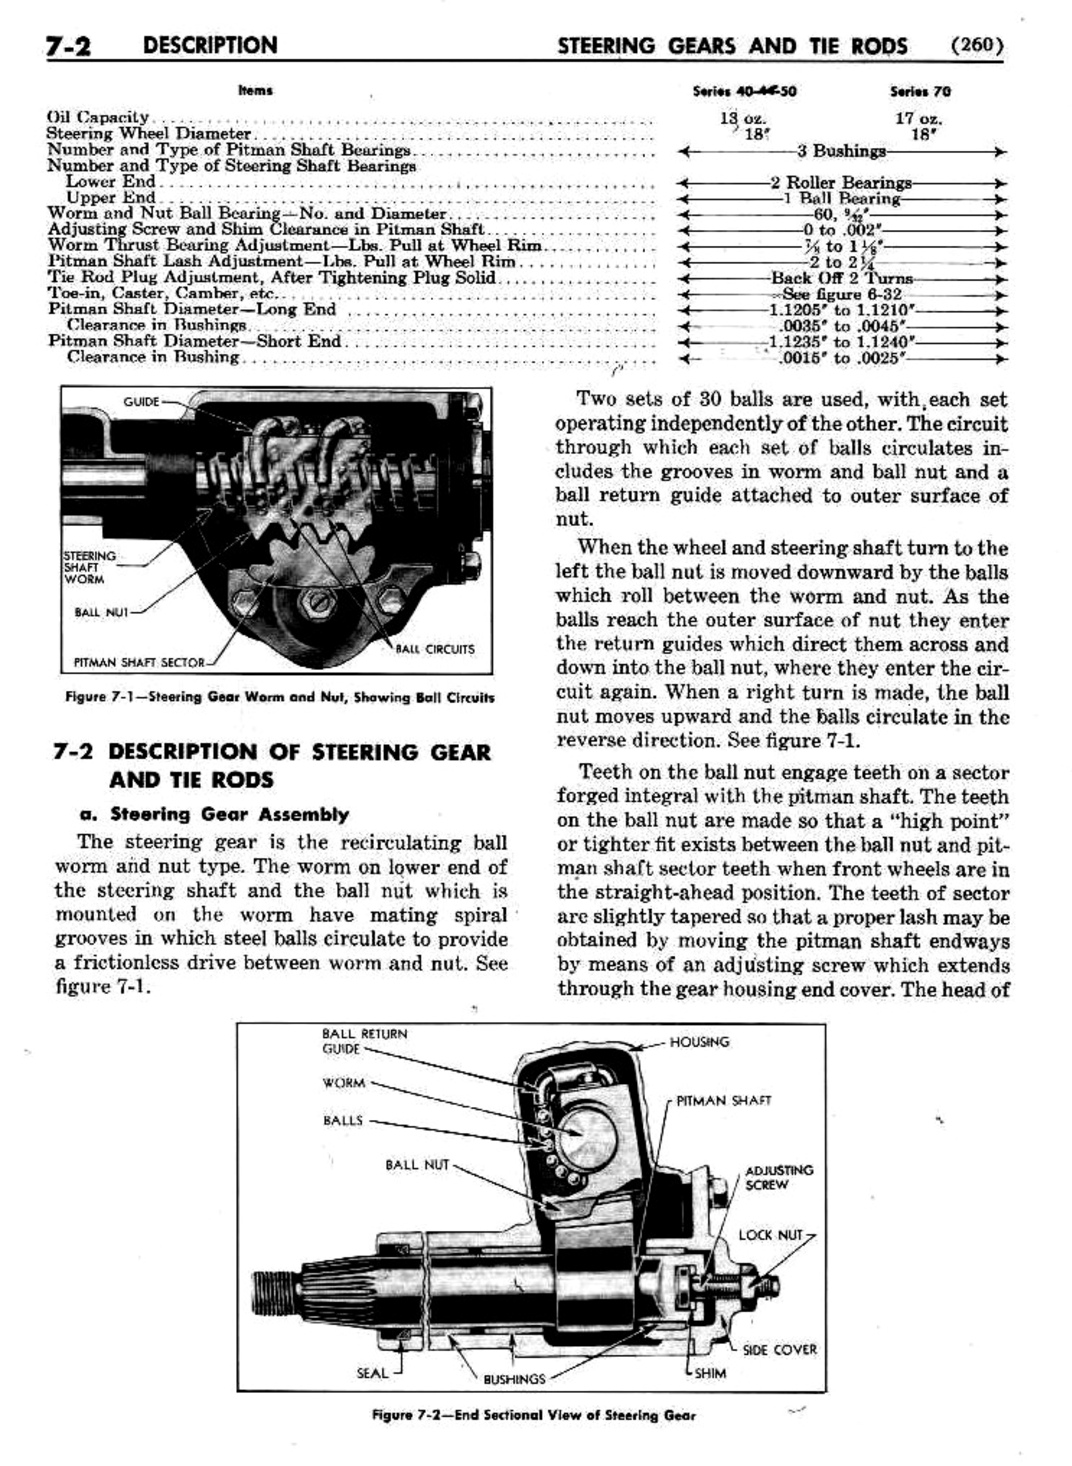 n_08 1951 Buick Shop Manual - Steering-002-002.jpg